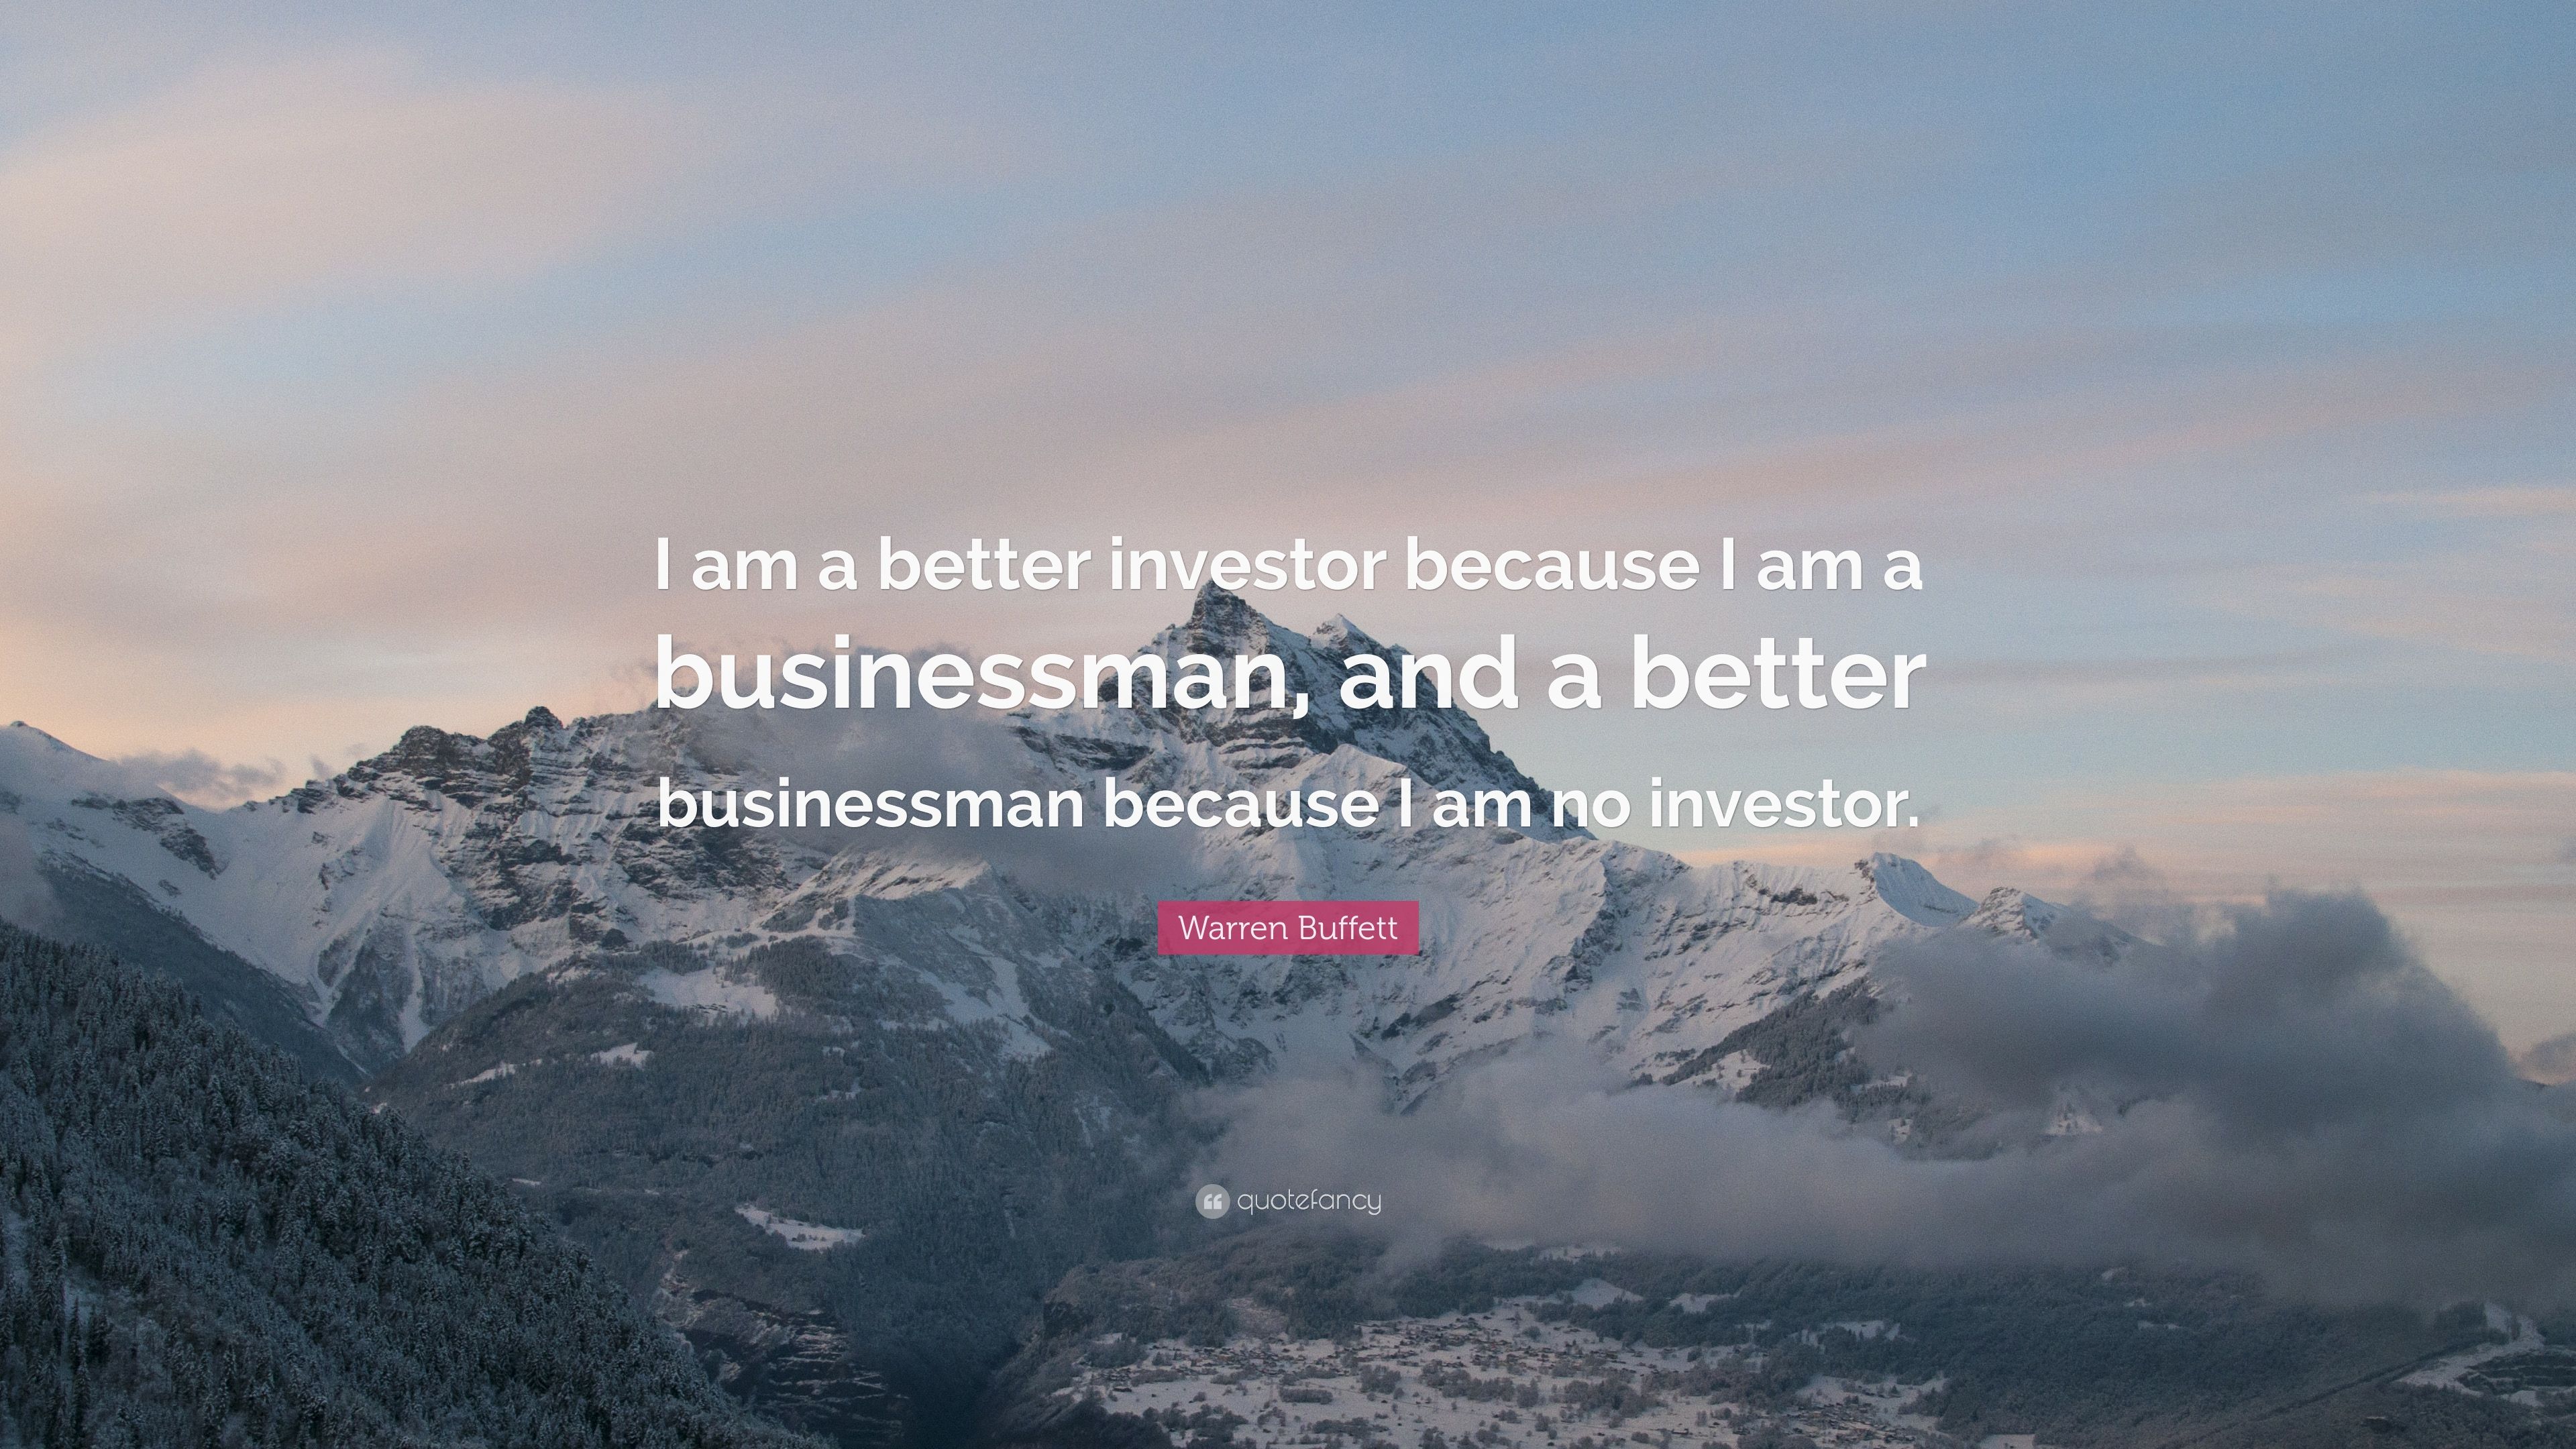 Warren Buffett Quote: “I am a better investor because I am a businessman, and a better businessman because I am no investor.” (10 wallpaper)